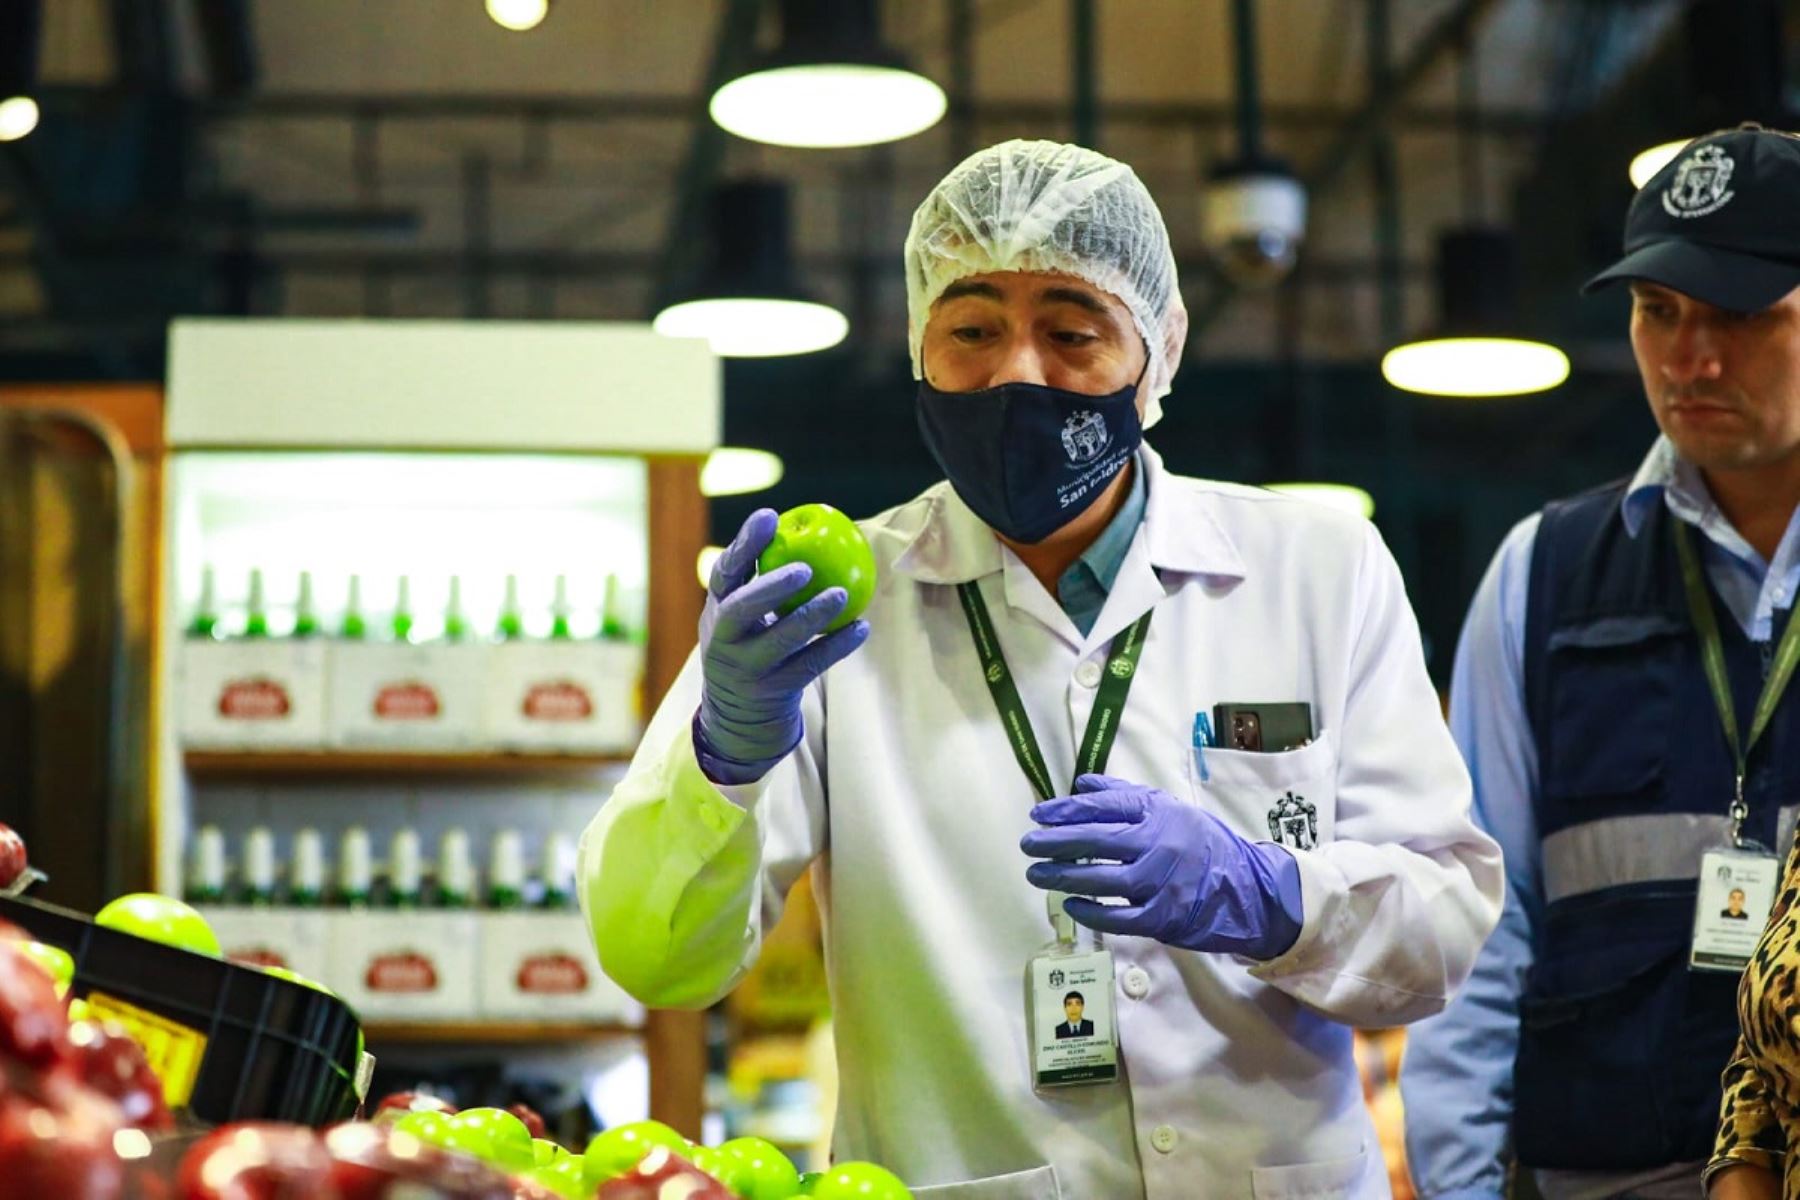 Municipalidad de San Isidro realiza inspecciones a supermercados para detectar presencia de plaguicidas en los alimentos. Foto: ANDINA/Difusión